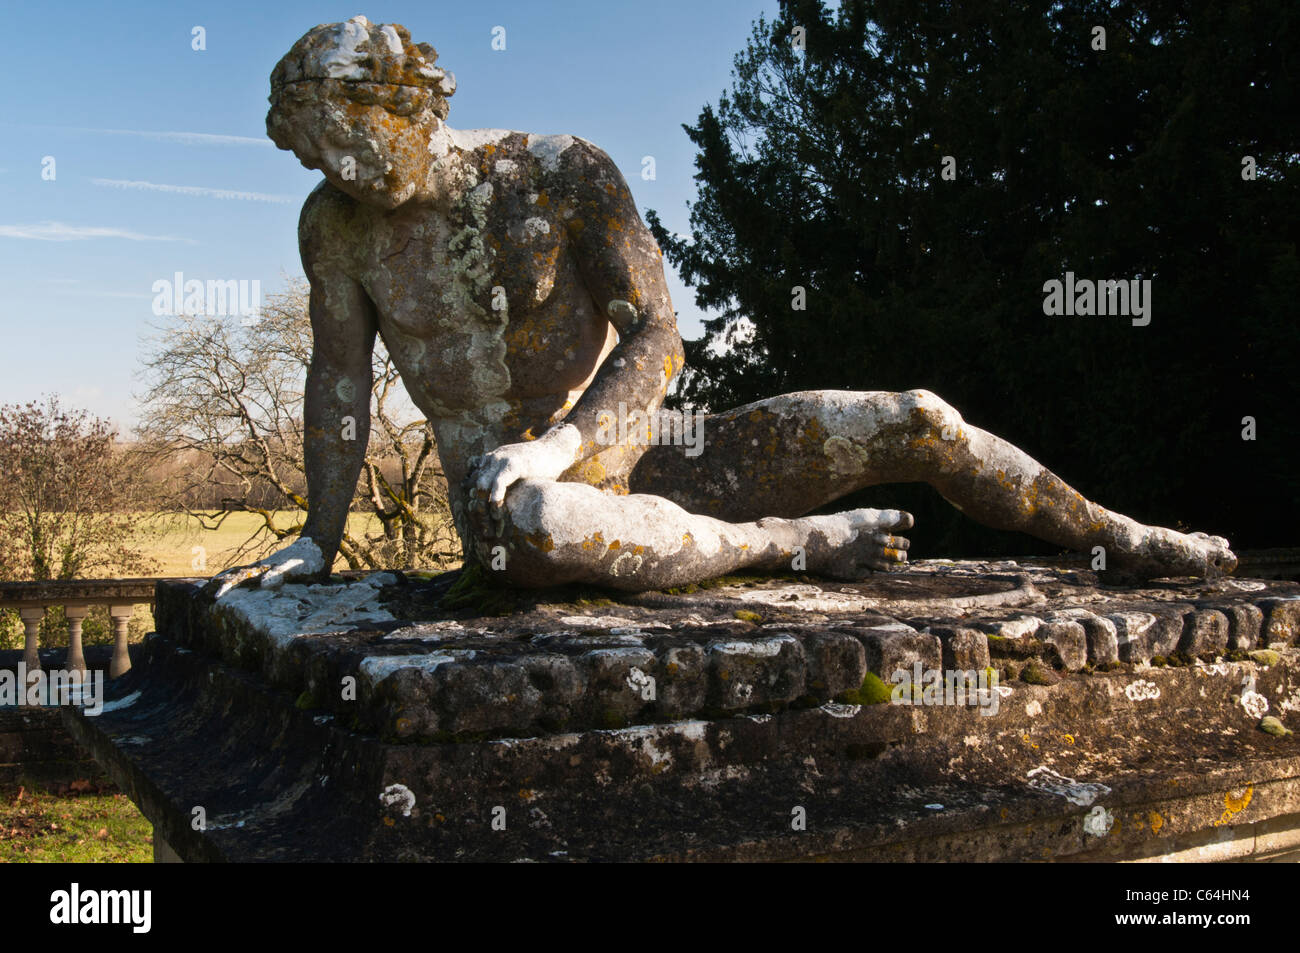 La statue couverte de lichen du « gladiateur de glace » de Scheemaker, baignée par le soleil d'hiver chaud à la maison de Rousham, Oxfordshire, Angleterre Banque D'Images